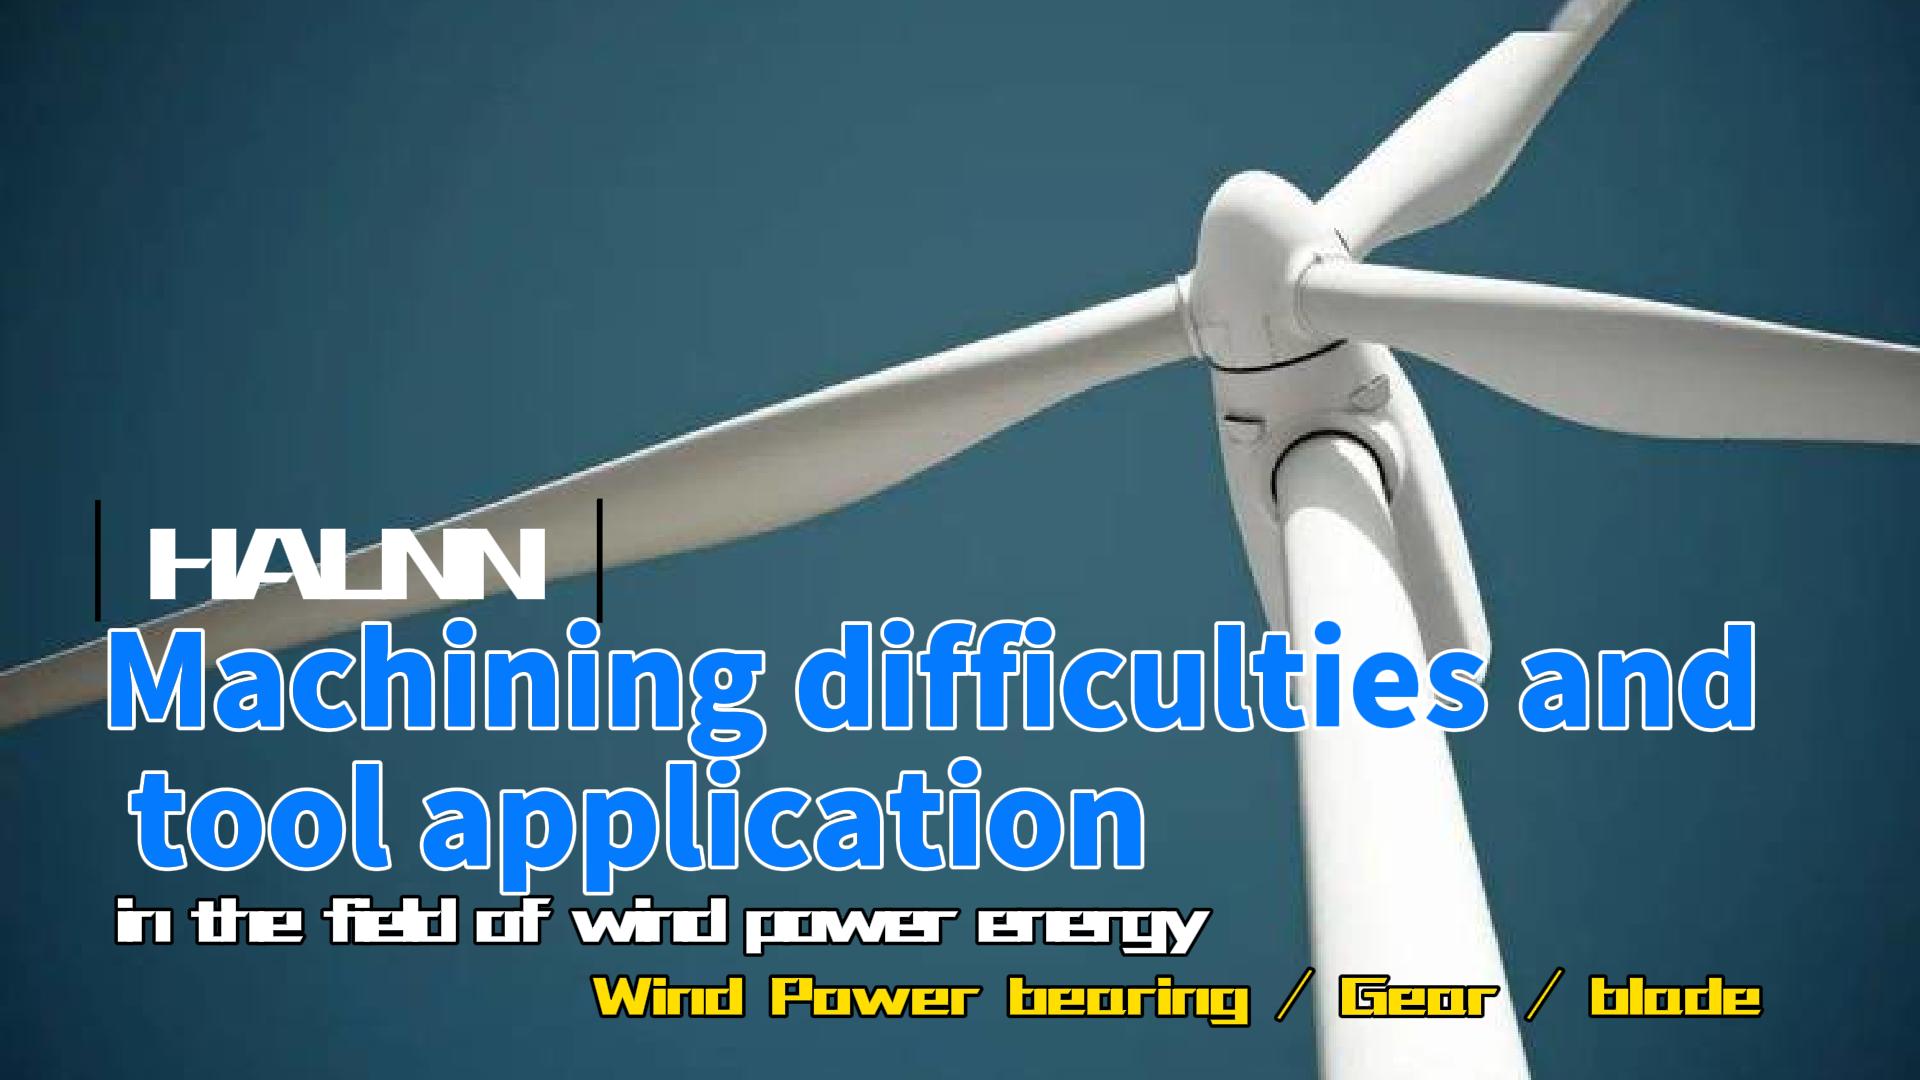 Решить проблему обработки подшипников/шестерен/лопастей ветряных турбин